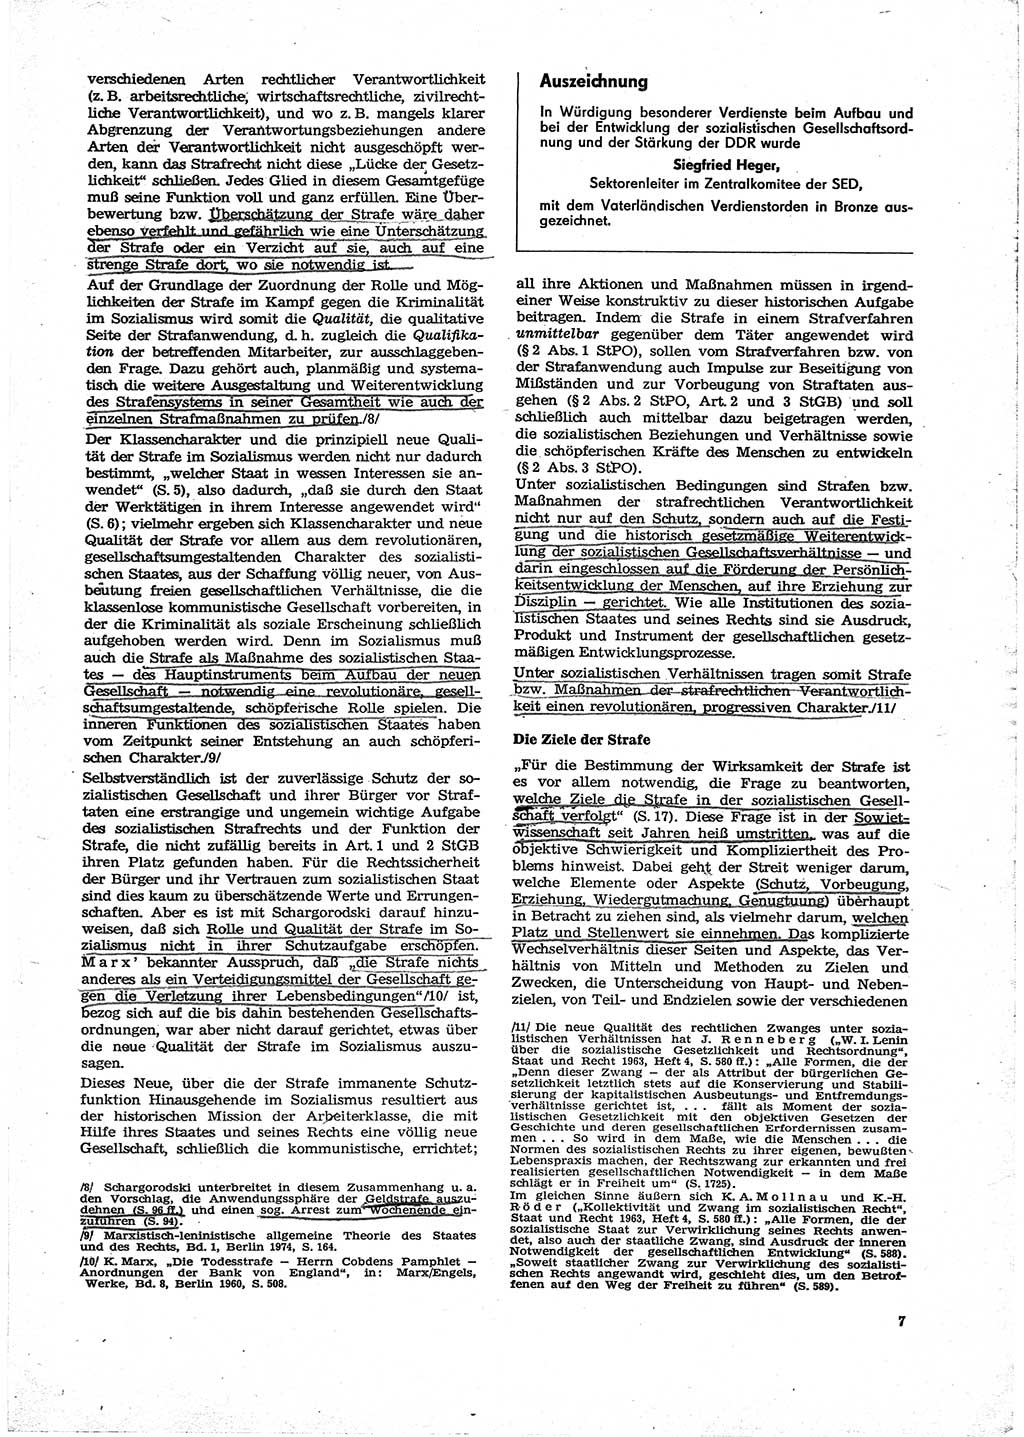 Neue Justiz (NJ), Zeitschrift für Recht und Rechtswissenschaft [Deutsche Demokratische Republik (DDR)], 29. Jahrgang 1975, Seite 7 (NJ DDR 1975, S. 7)